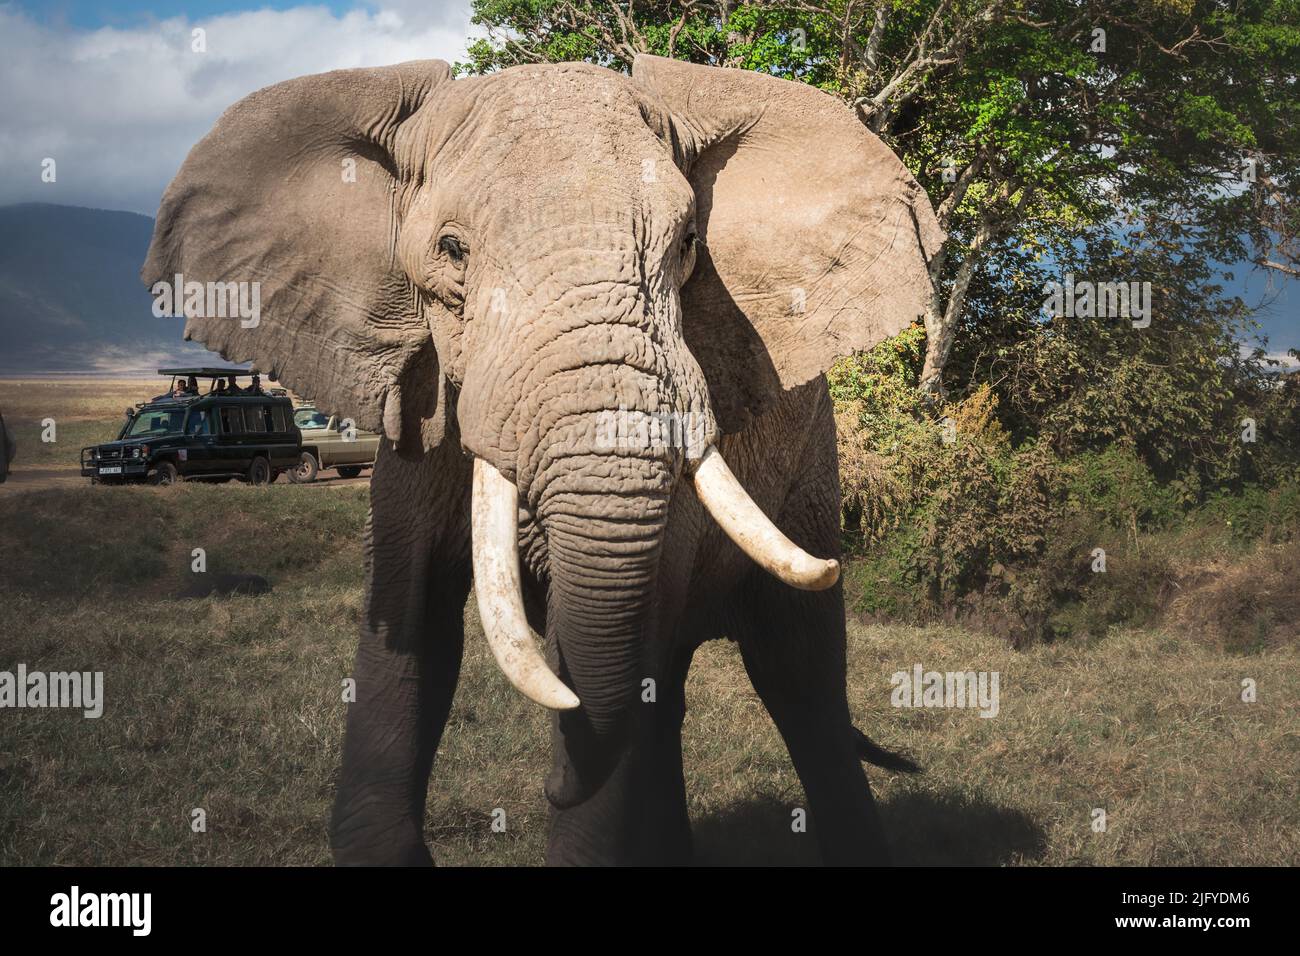 Isolierte große Erwachsene männliche Elefanten (Elephantidae) und Wildtiersafari Jeeps im Grasland Naturschutzgebiet des Ngorongoro Krater. Tansania. Afrika Stockfoto